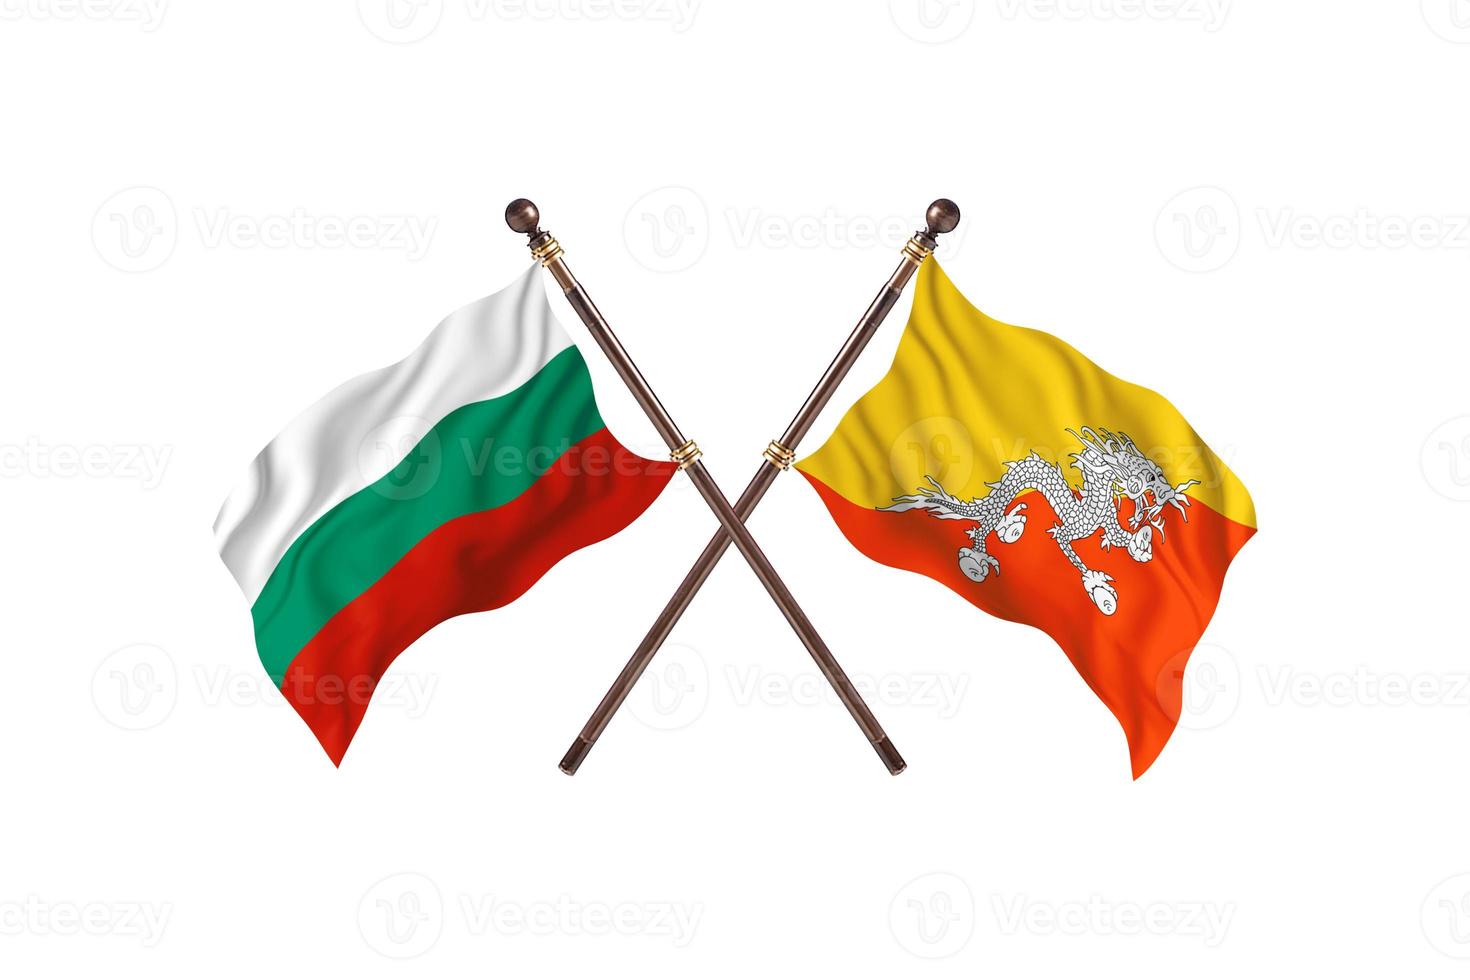 Bulgária contra Butão duas bandeiras de país foto